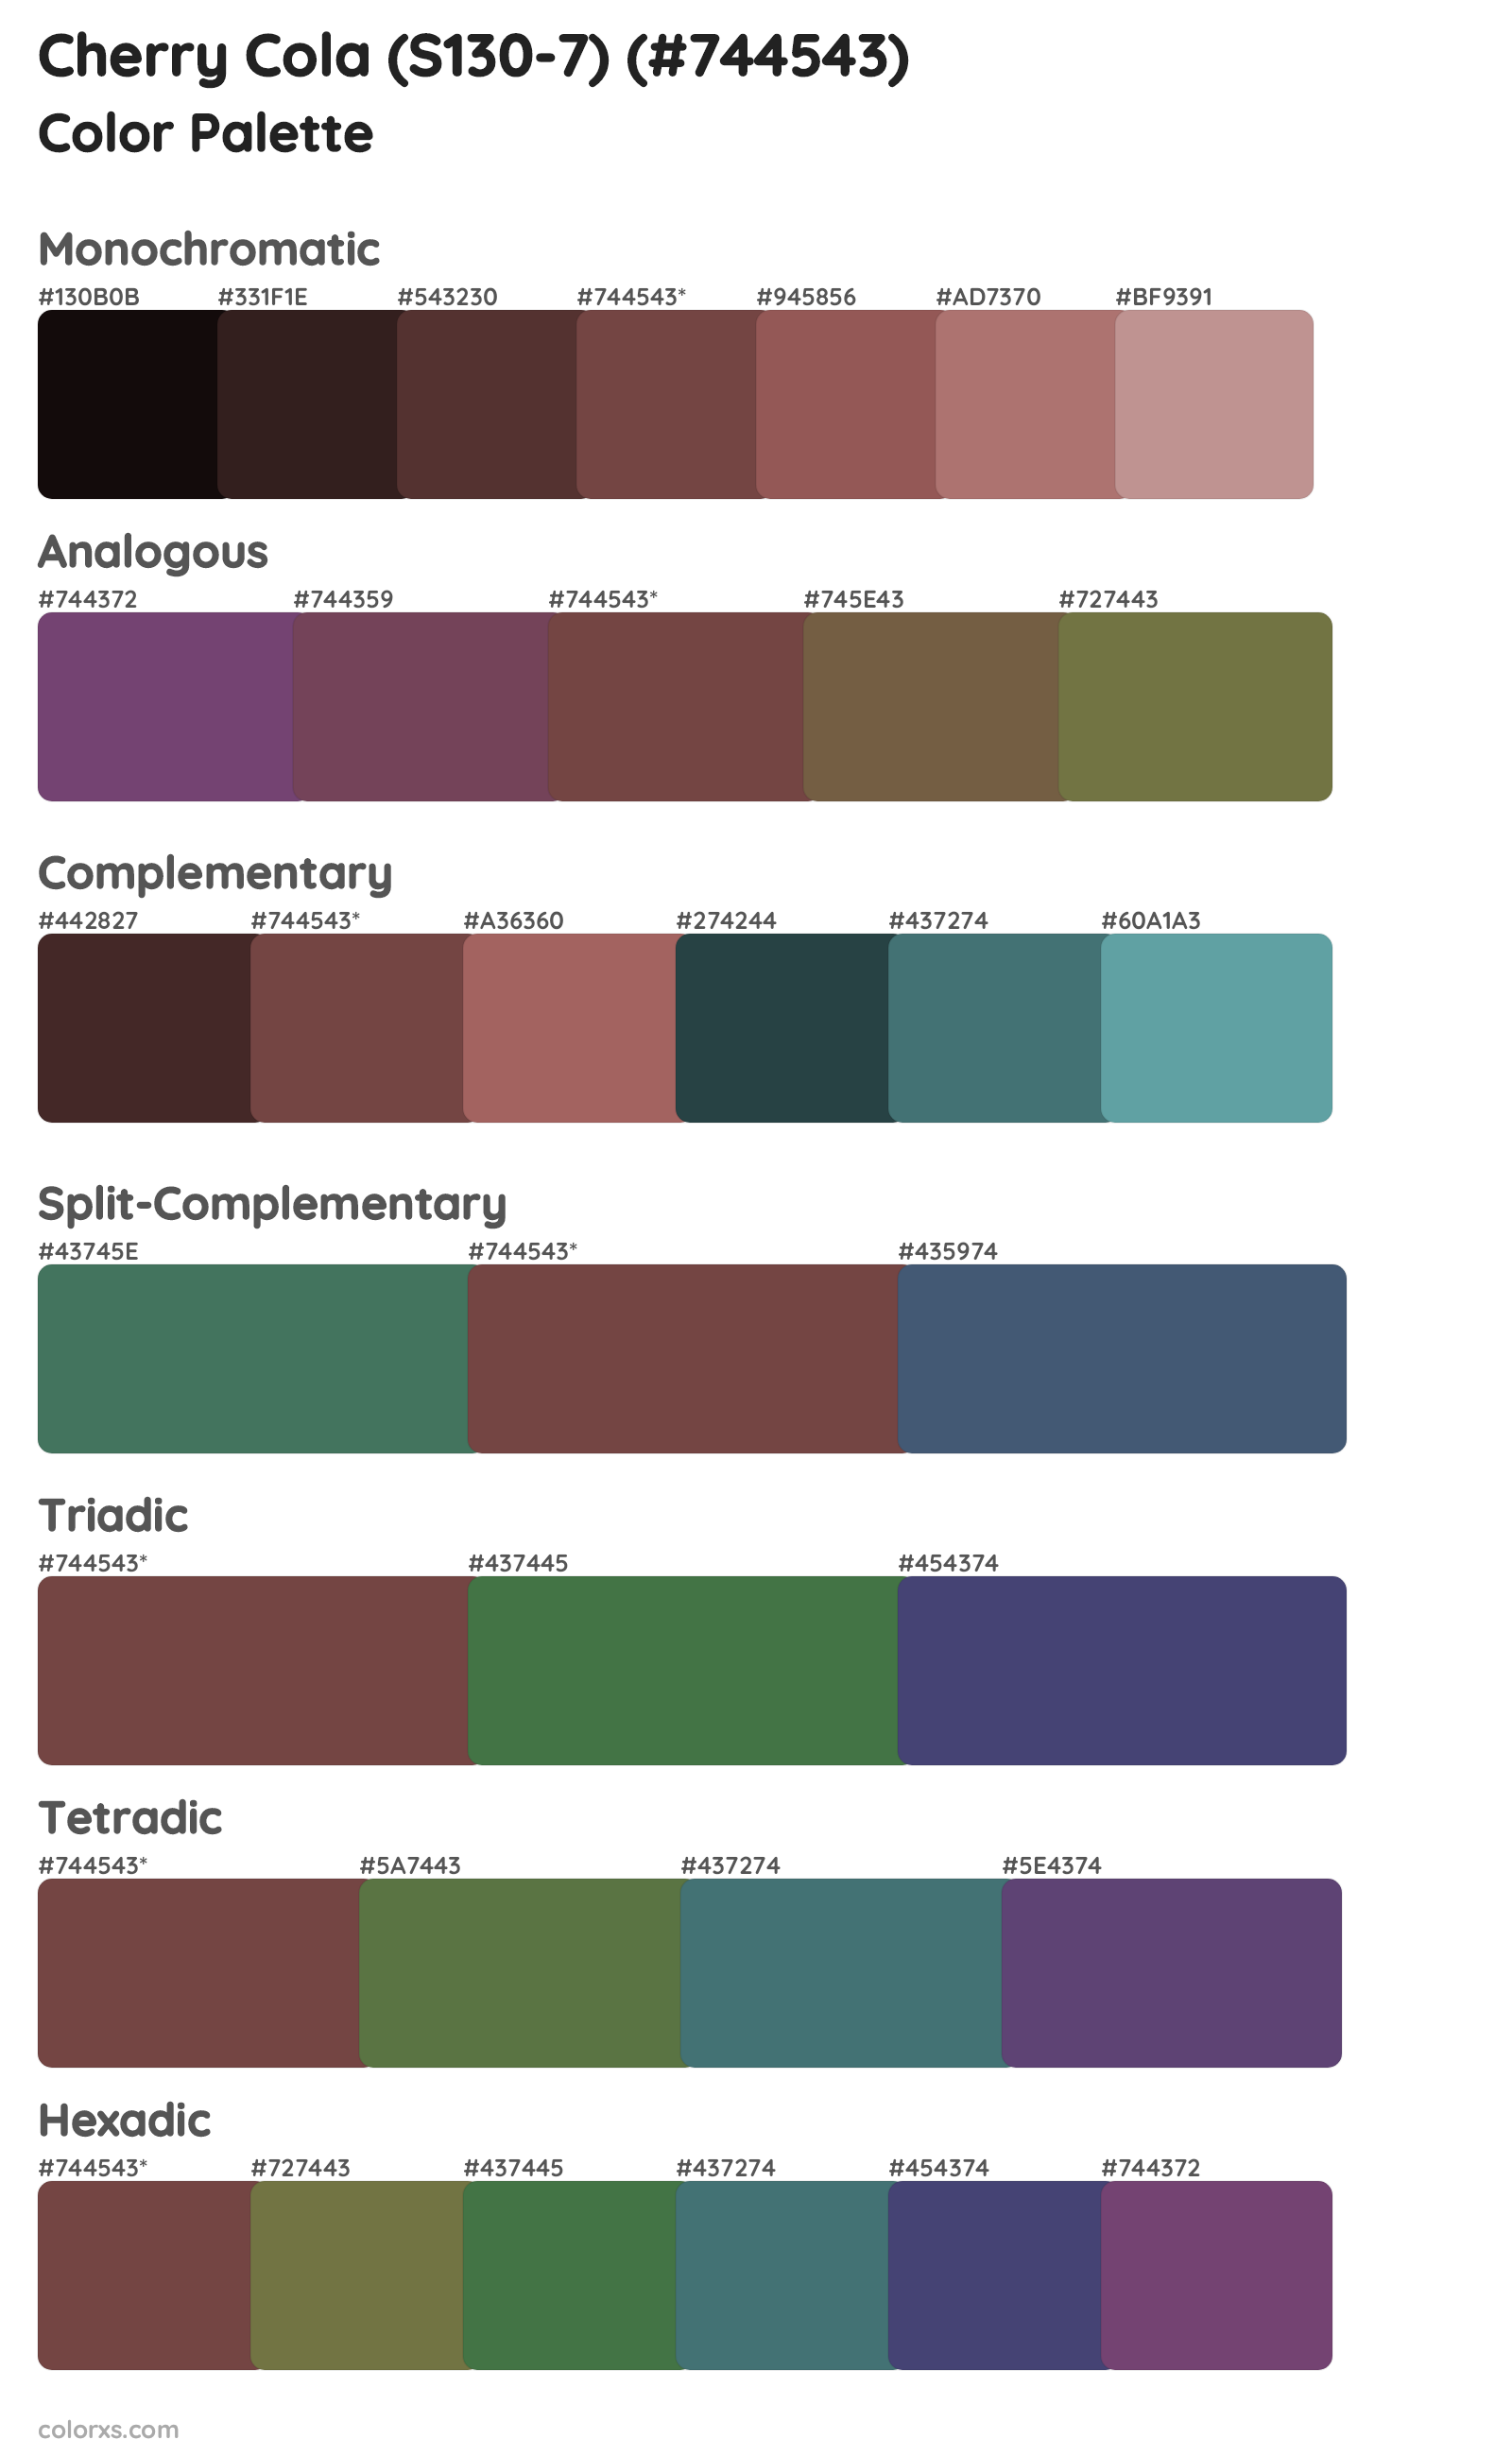 Cherry Cola (S130-7) Color Scheme Palettes